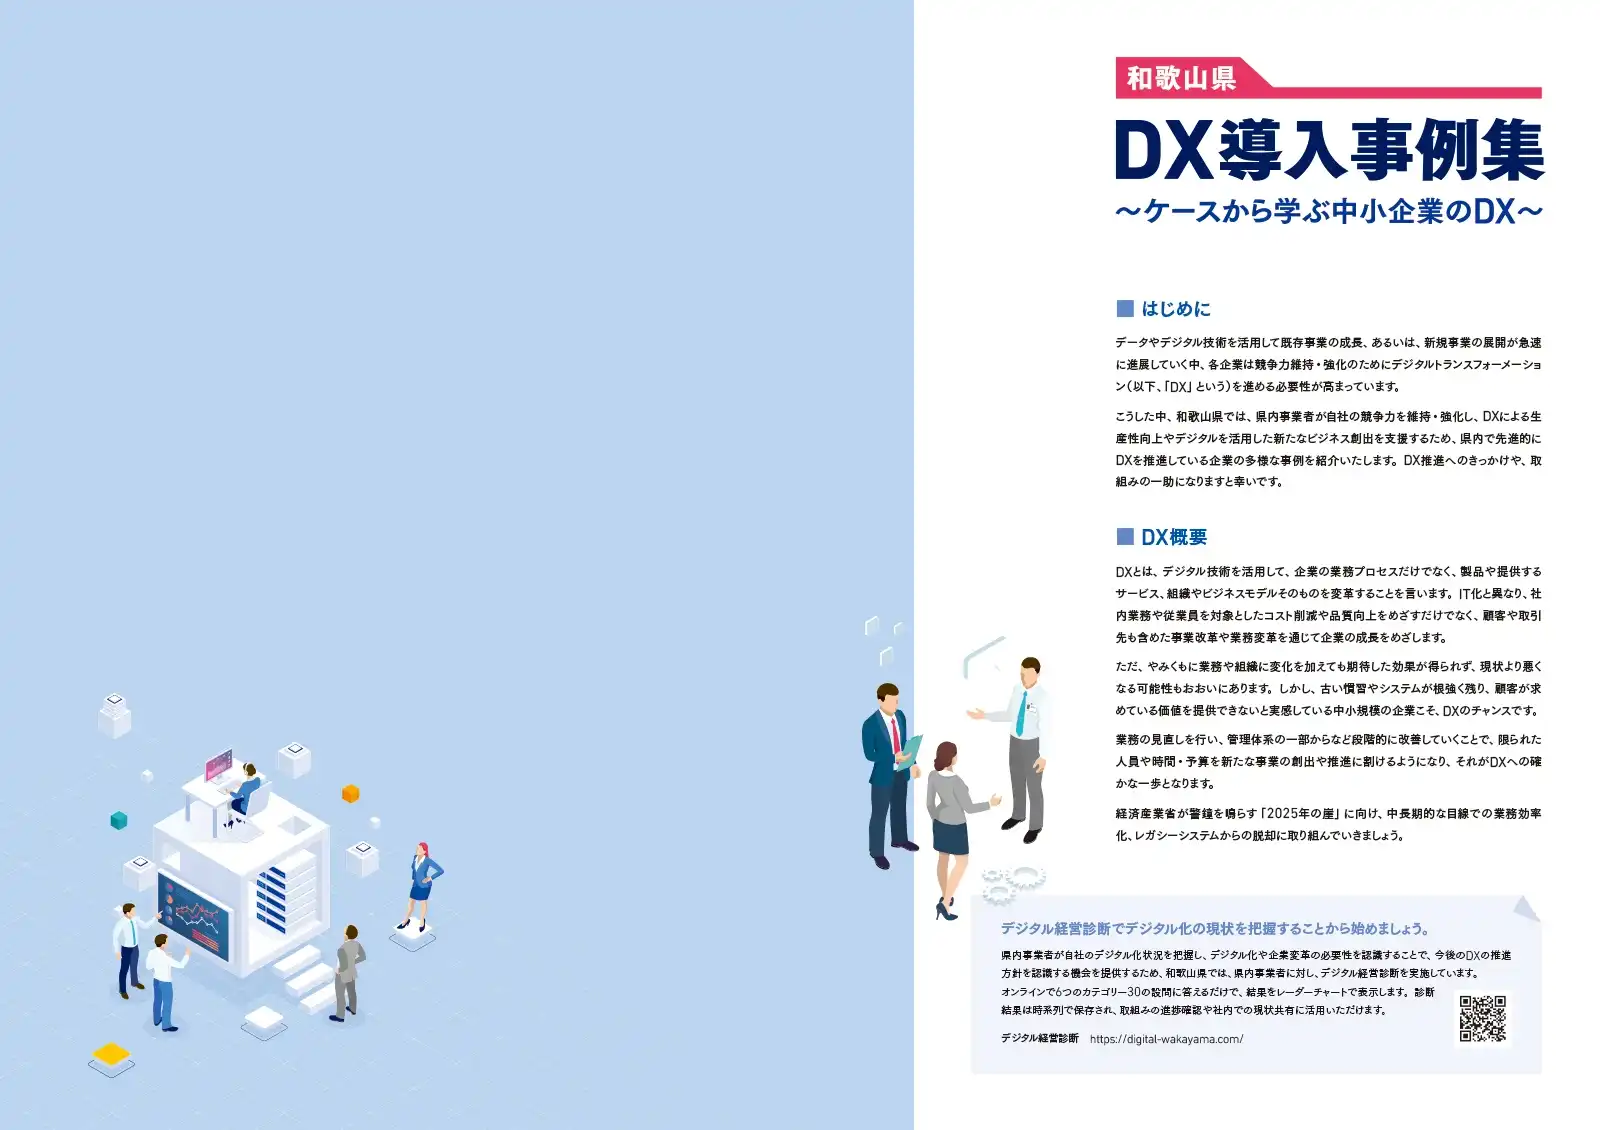 和歌山県DX導入事例集の誌面デザイン